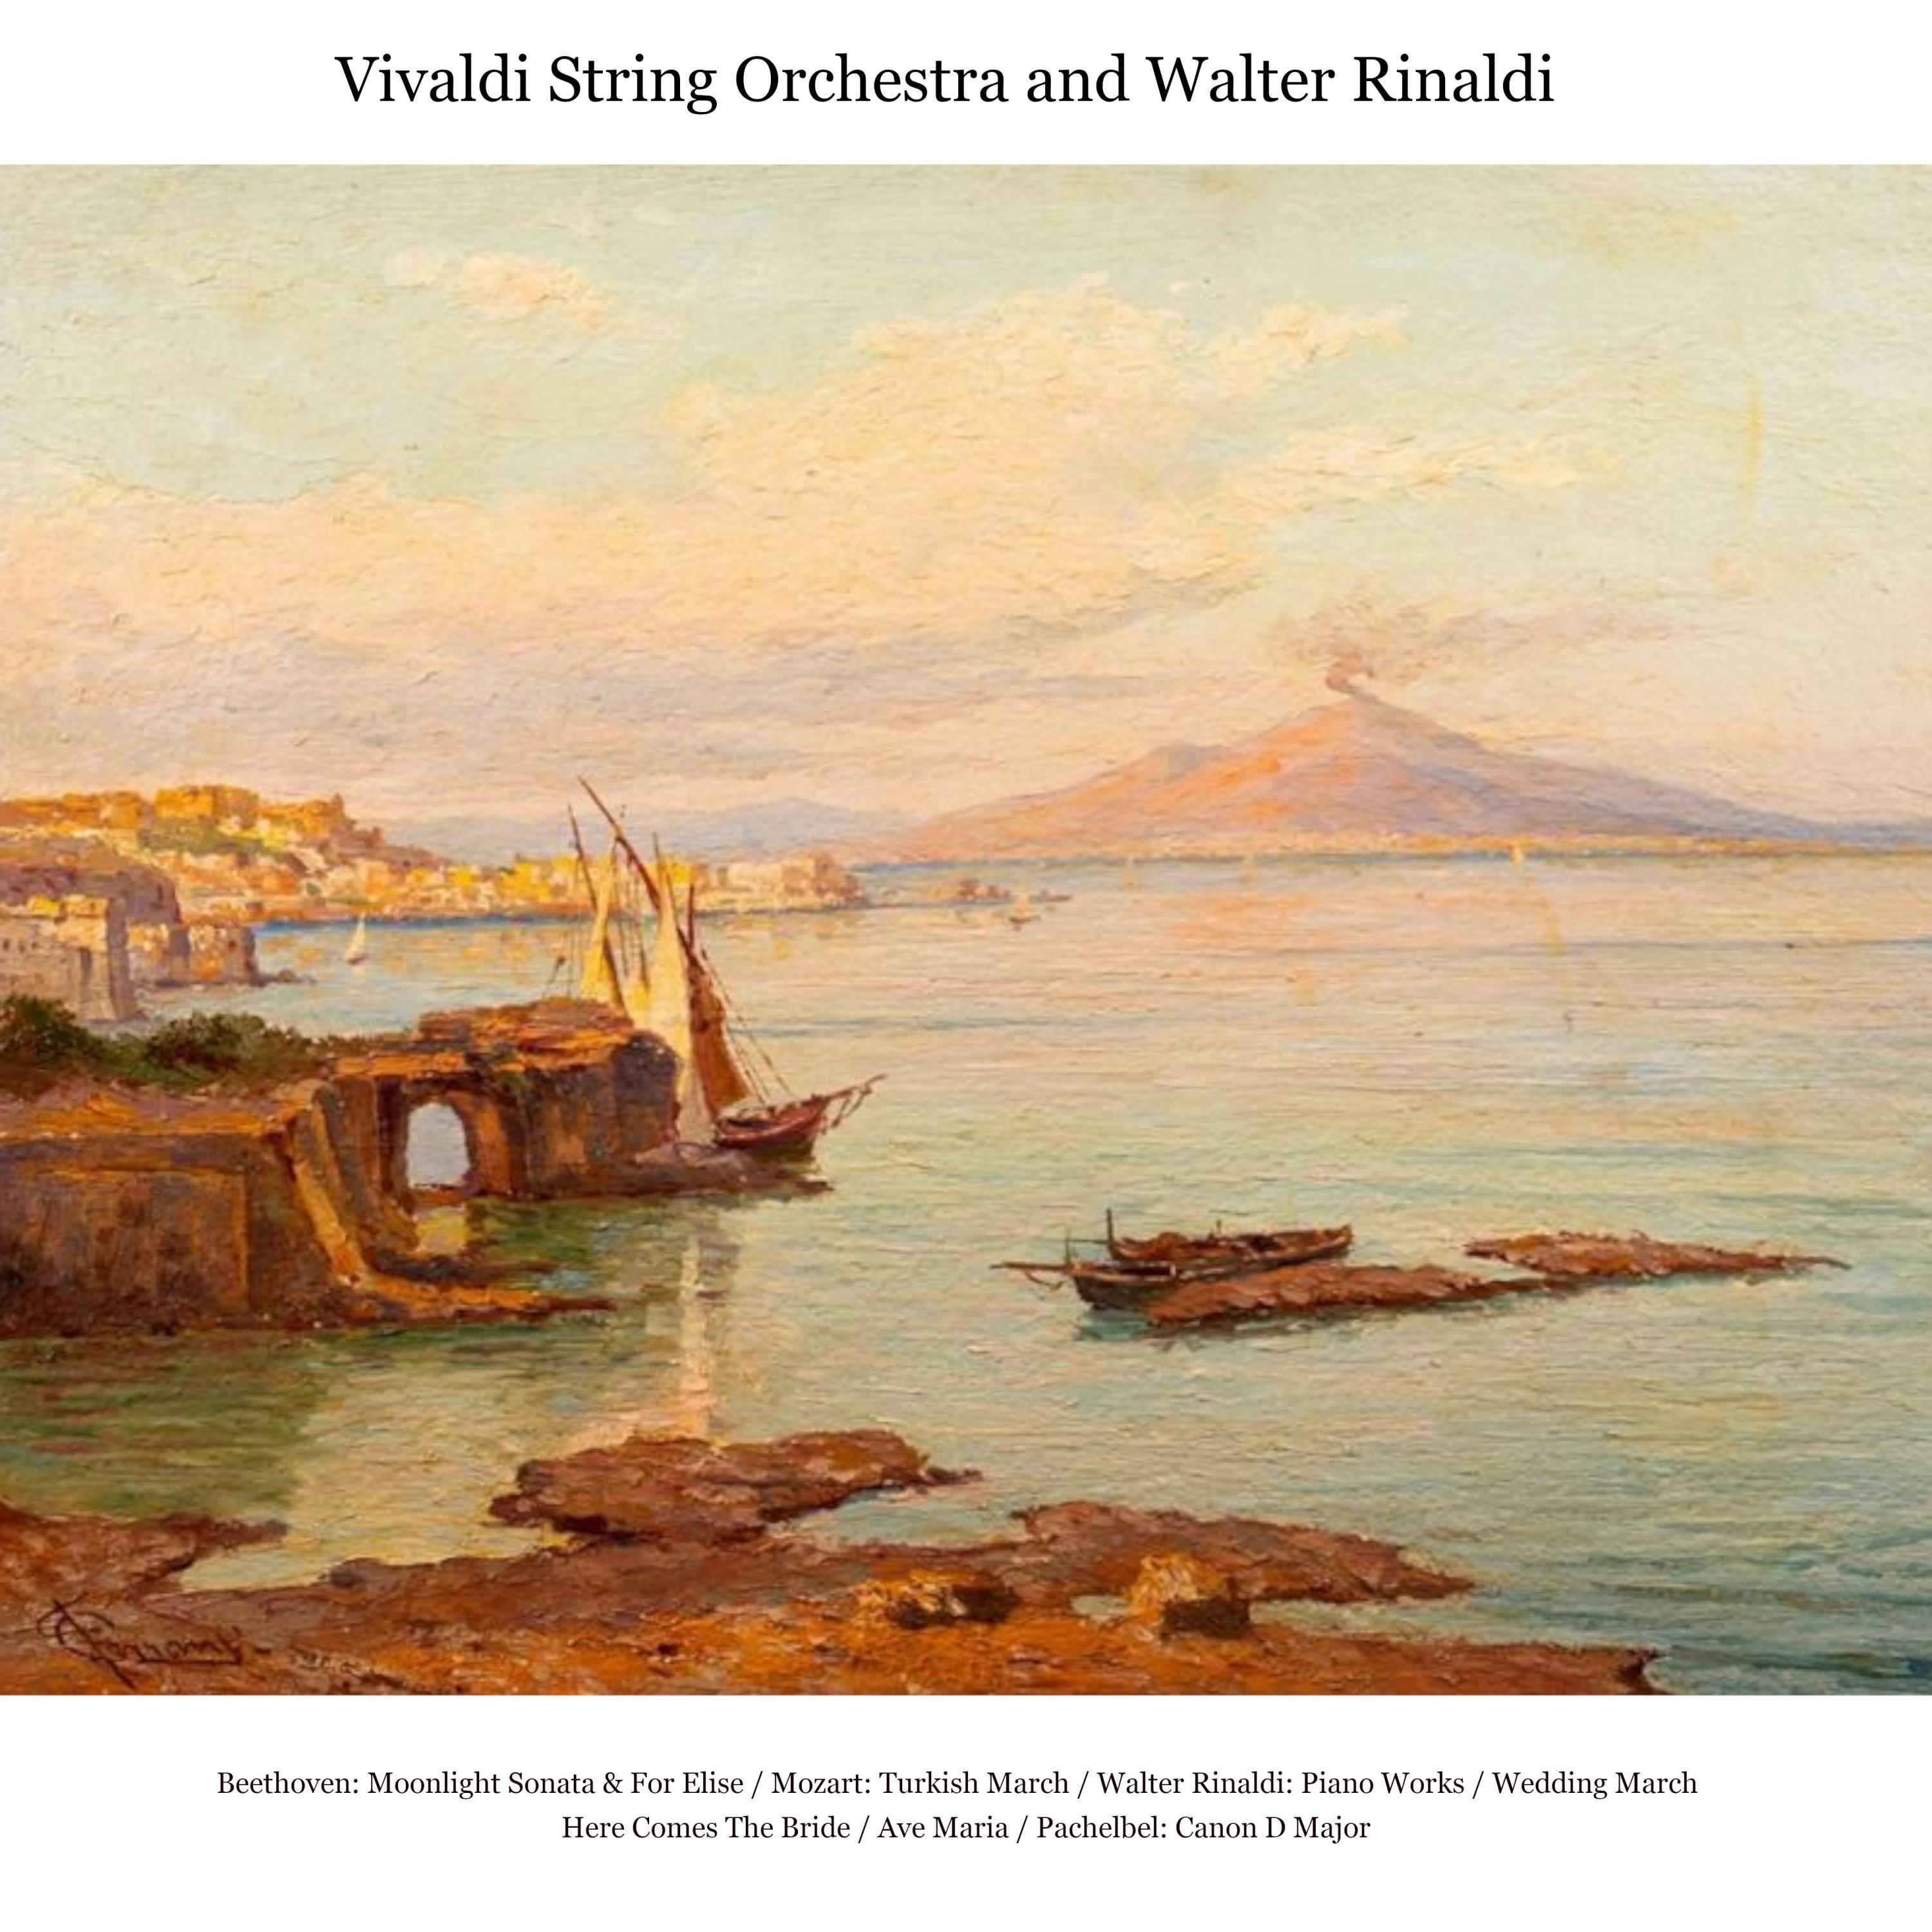 Walter Rinaldi - Metamorfosi, for Solo Piano in B Minor, Op. 3: Adagio